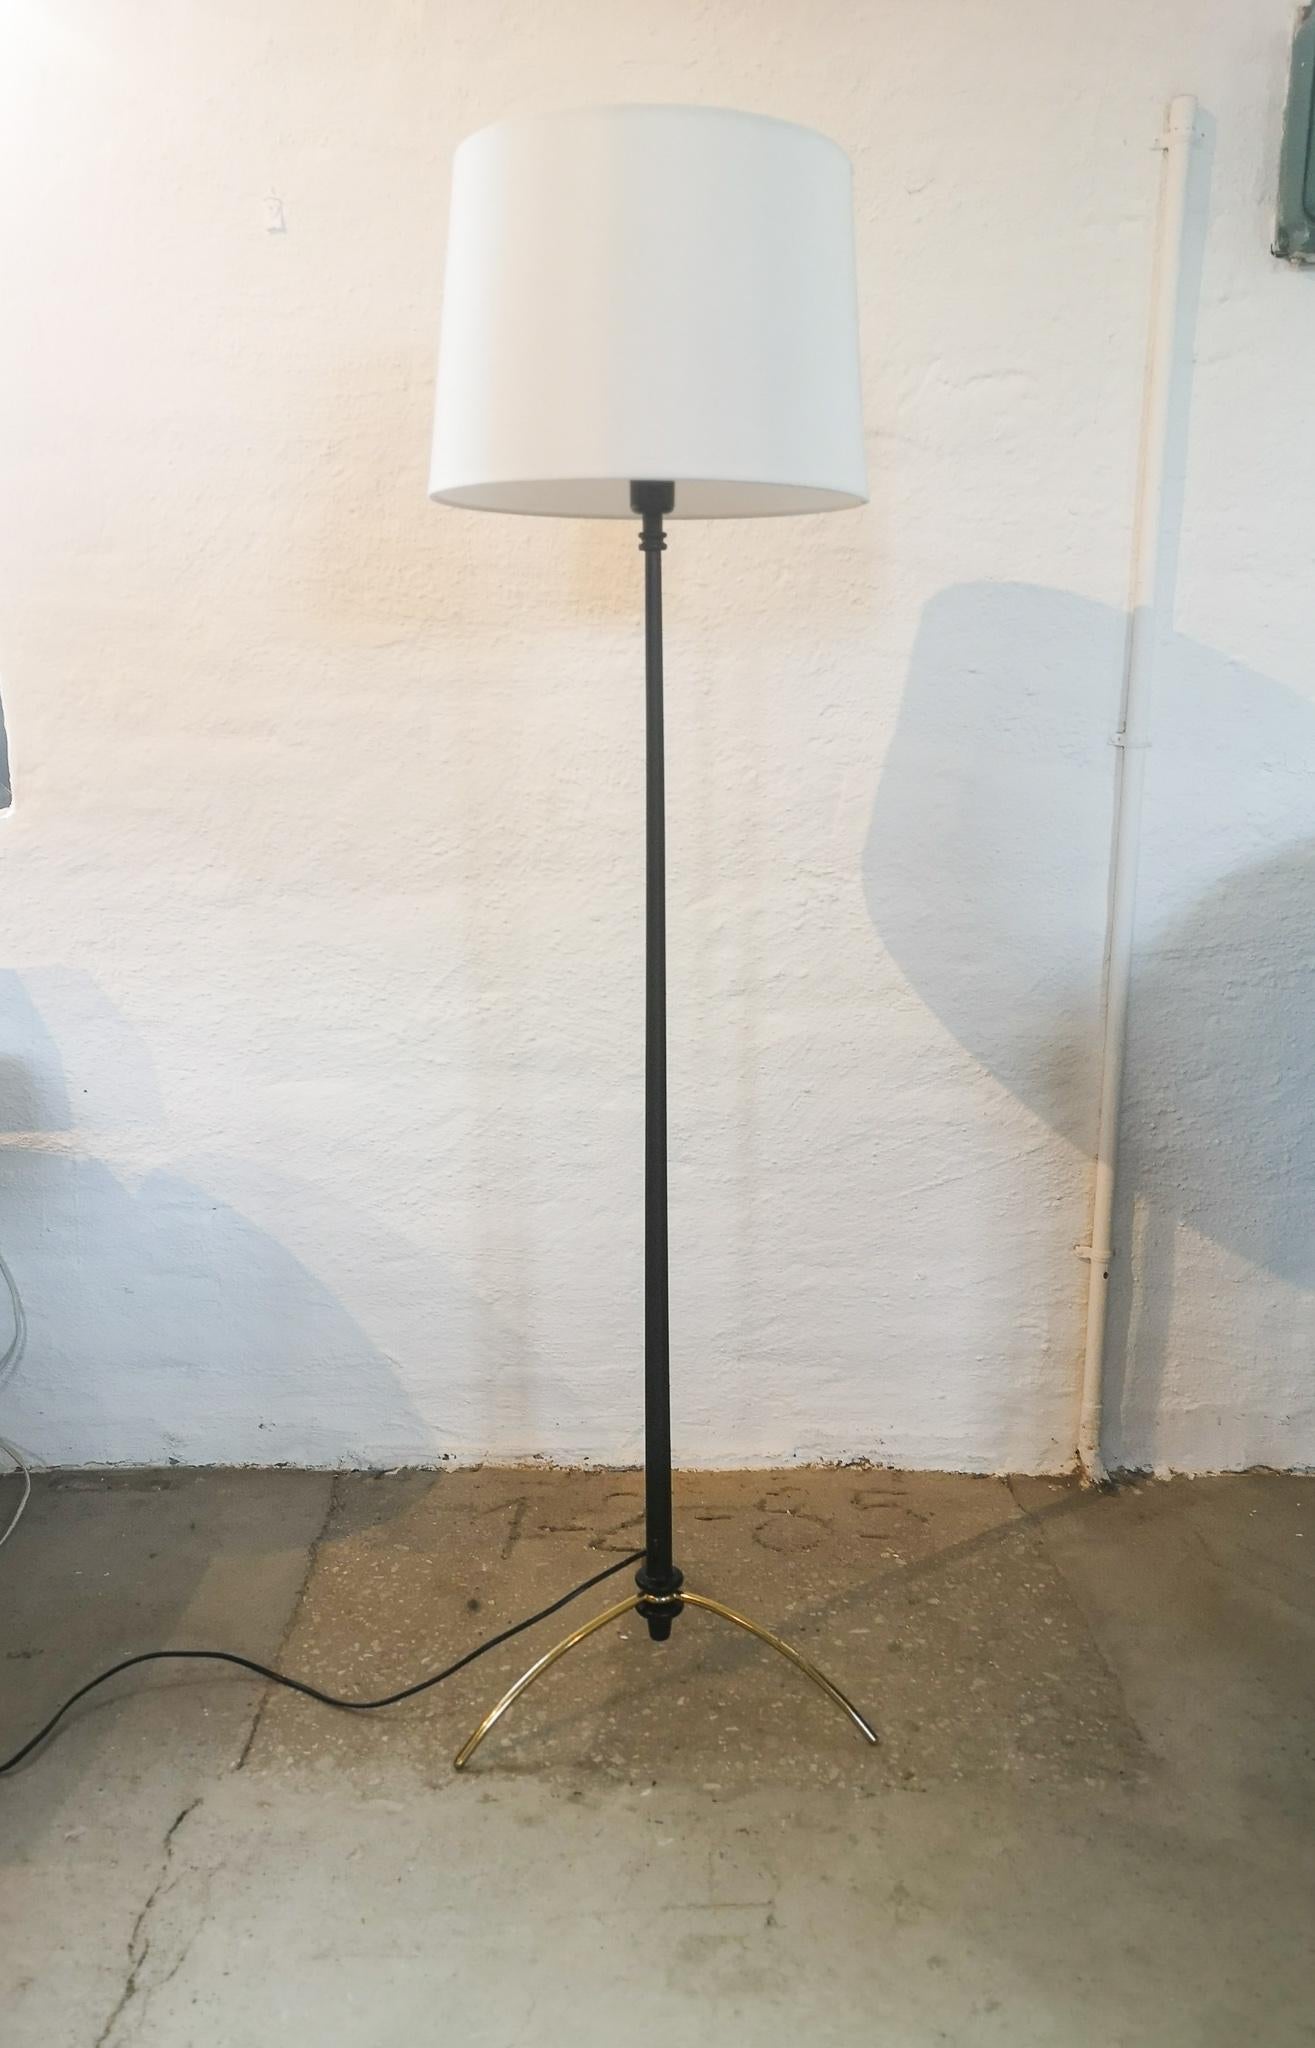 Merveilleux lampadaire produit en Suède dans les années 1960. Et conçu par Hans Agne Jakobsson. Le modèle G45 a un pied en laiton massif et le support de la lampe est en bois peint en noir. Pas la teinte originale.

Bon état de fonctionnement,